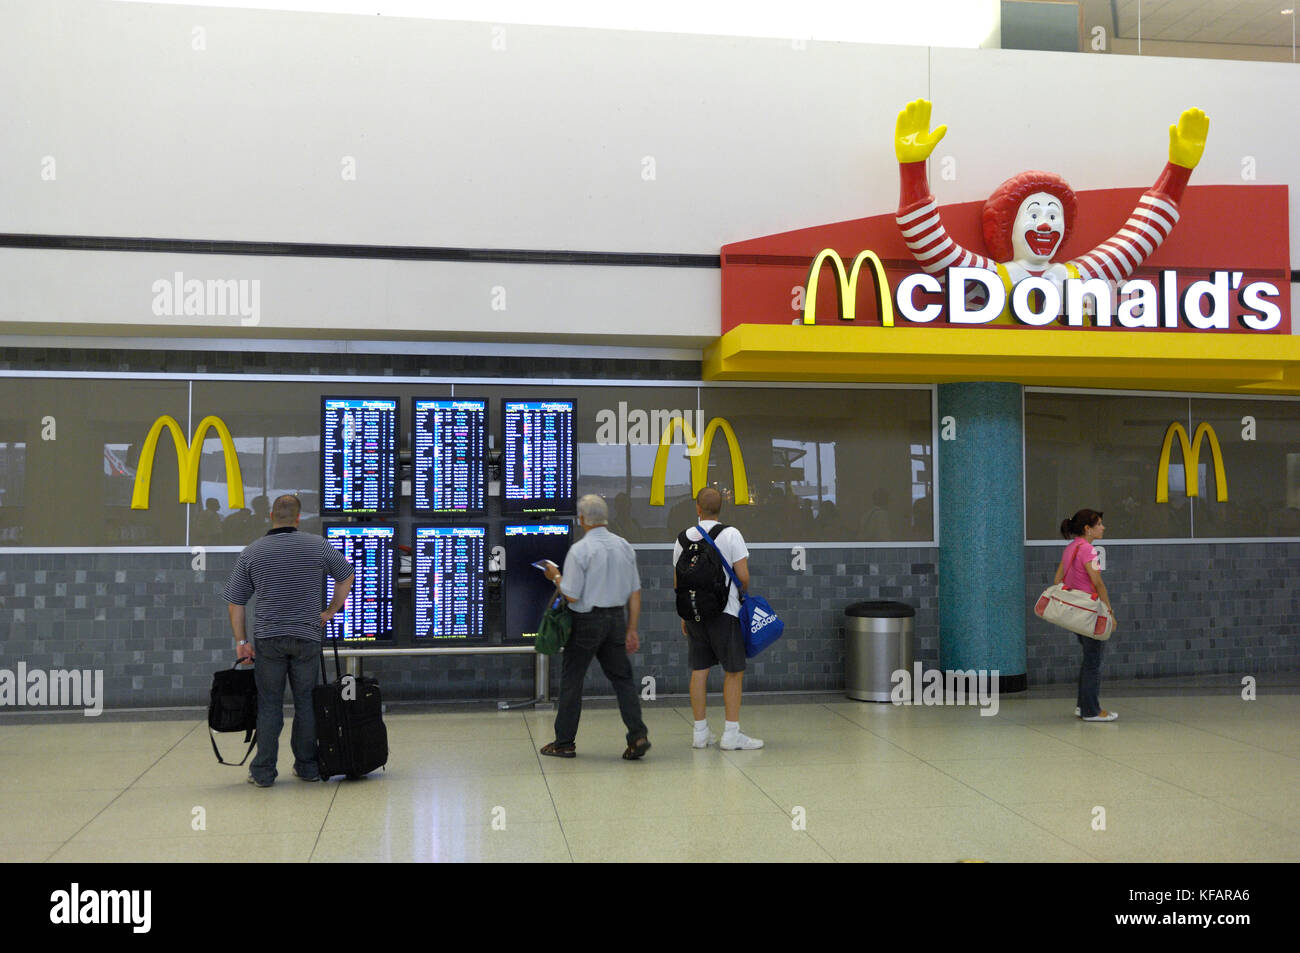 Passagiere mit Gepäck auf dem Flug Informationen Bildschirme neben Mcdonald's in der TerminalC Stockfoto